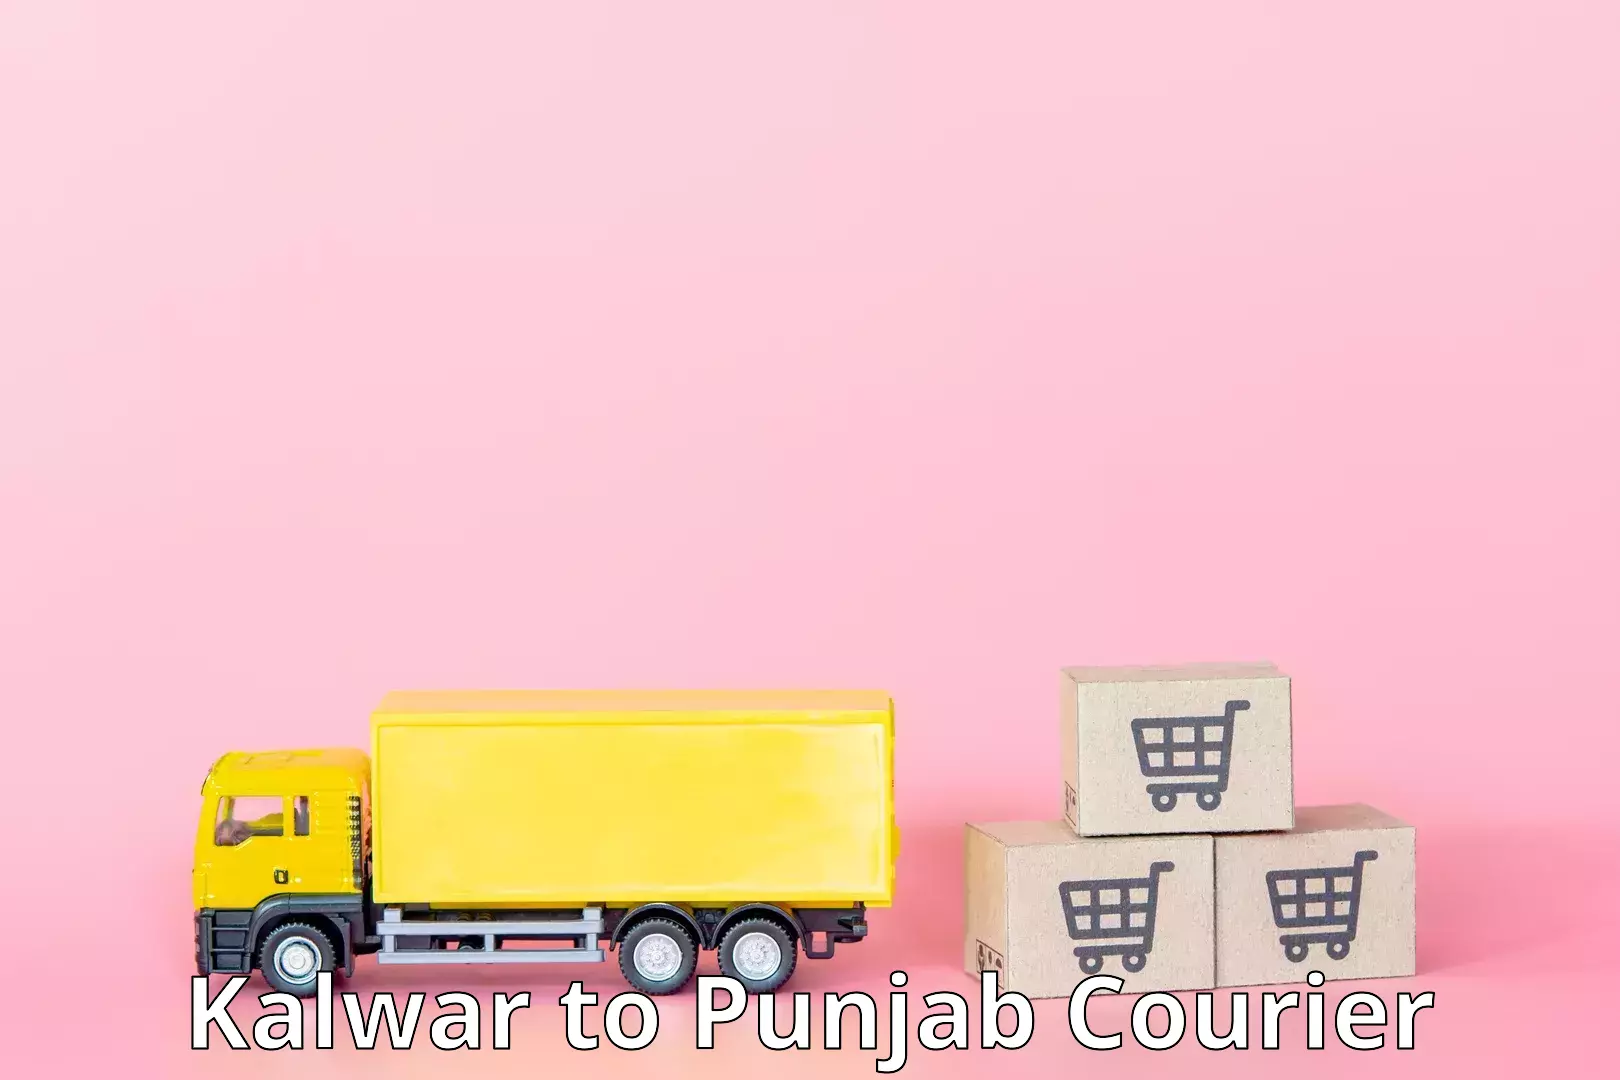 Nationwide shipping coverage in Kalwar to Jalandhar